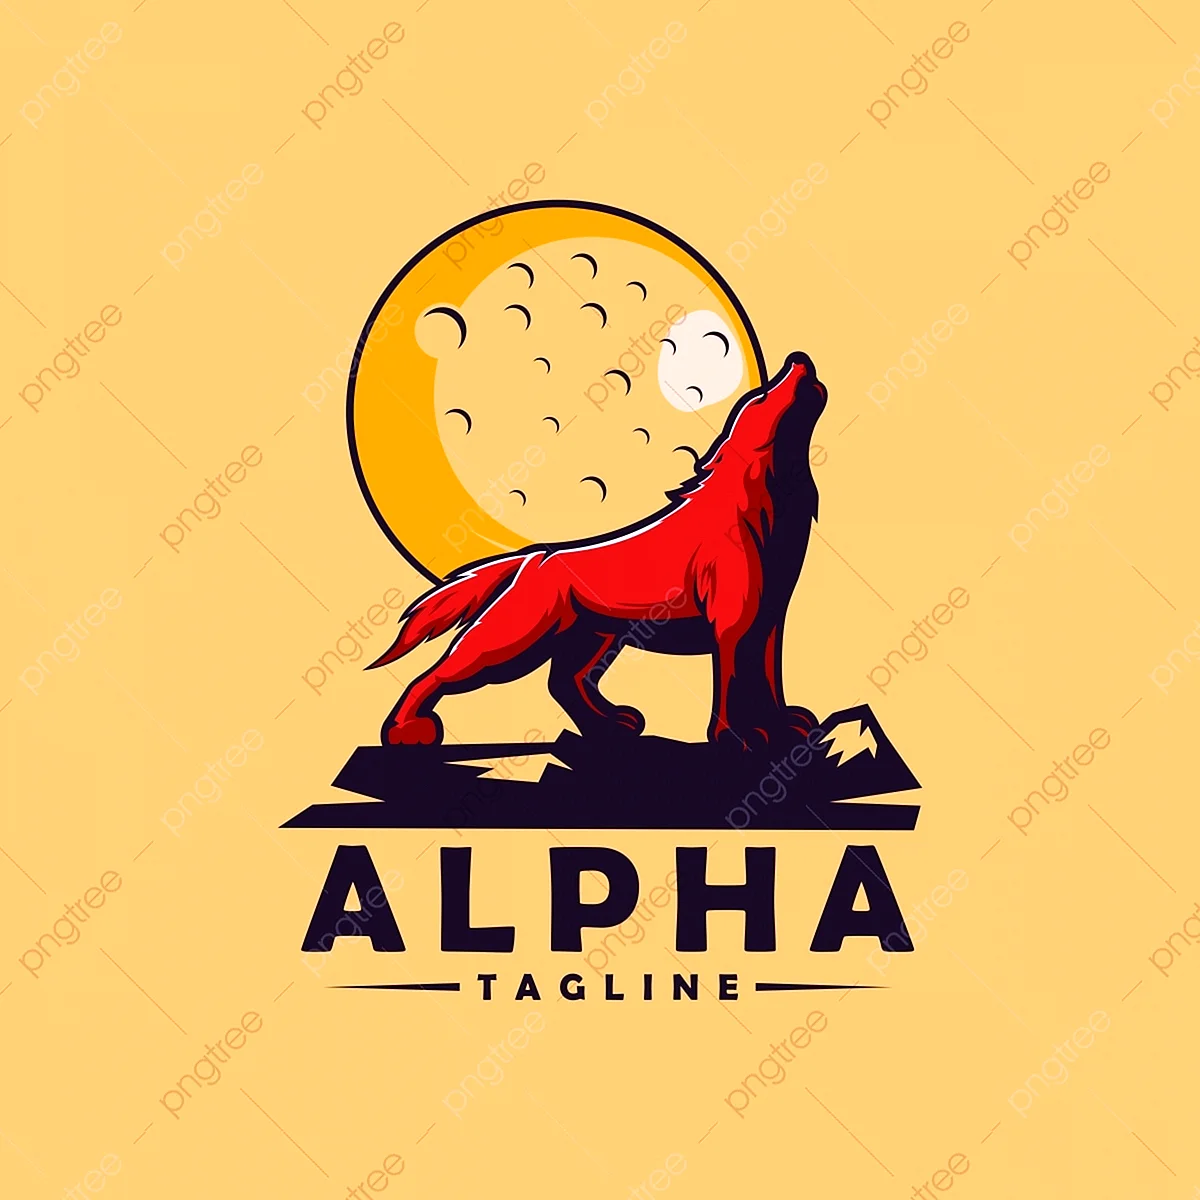 Alpha эмблема